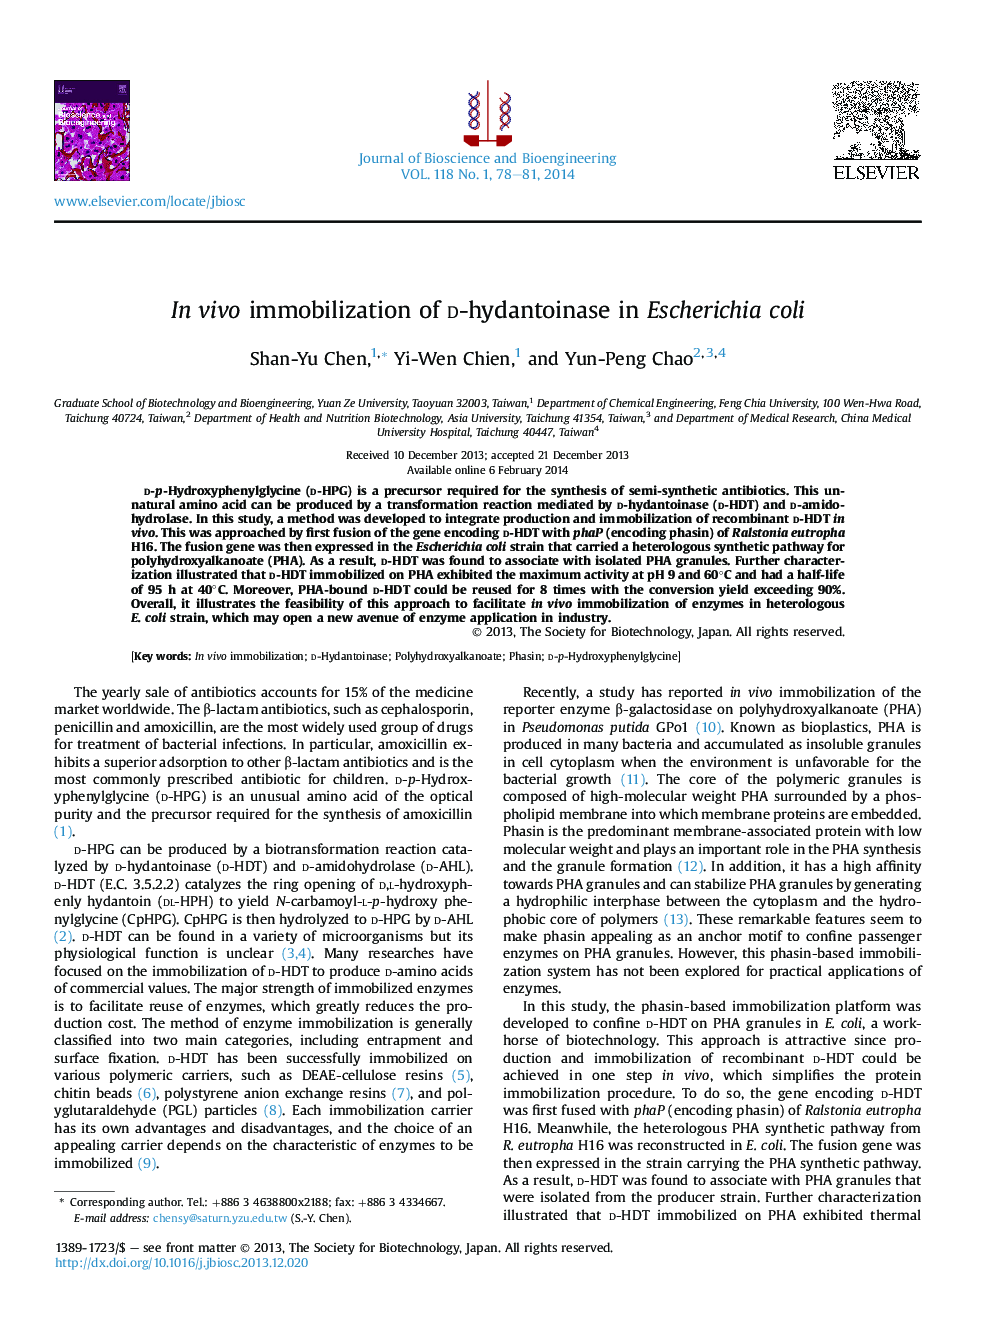 In vivo immobilization of d-hydantoinase in Escherichia coli